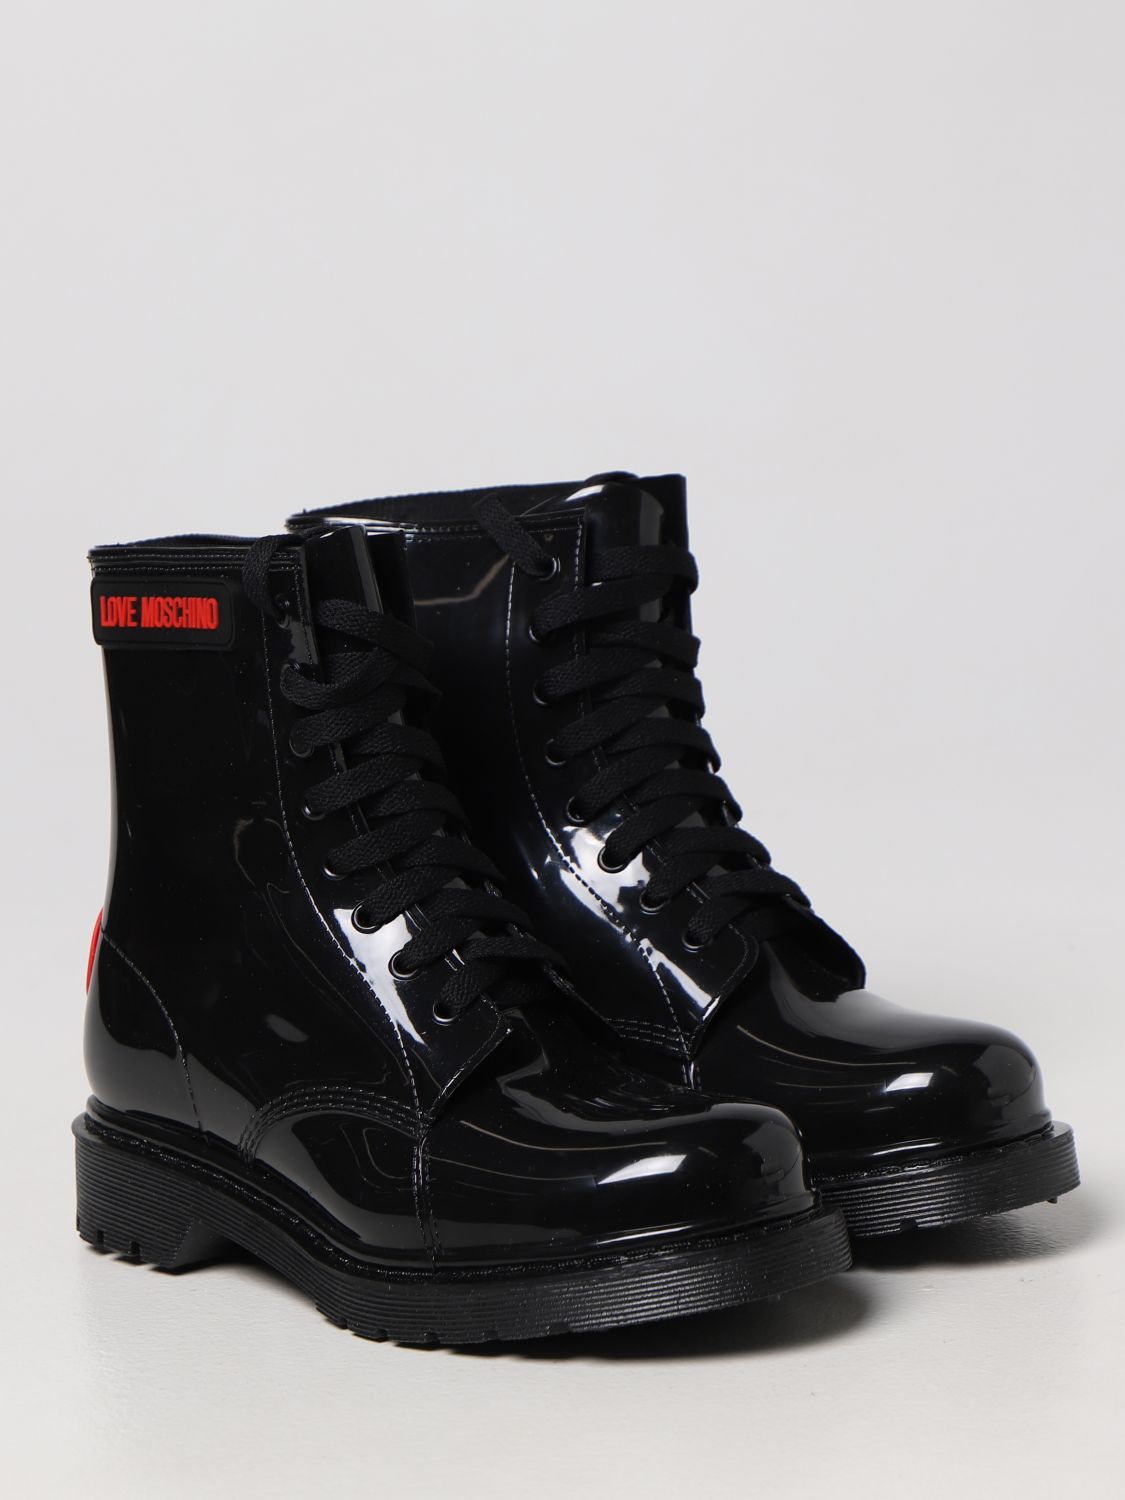 Ankle boots de Love Moschino de color Negro Mujer Zapatos de Botas de Botines 